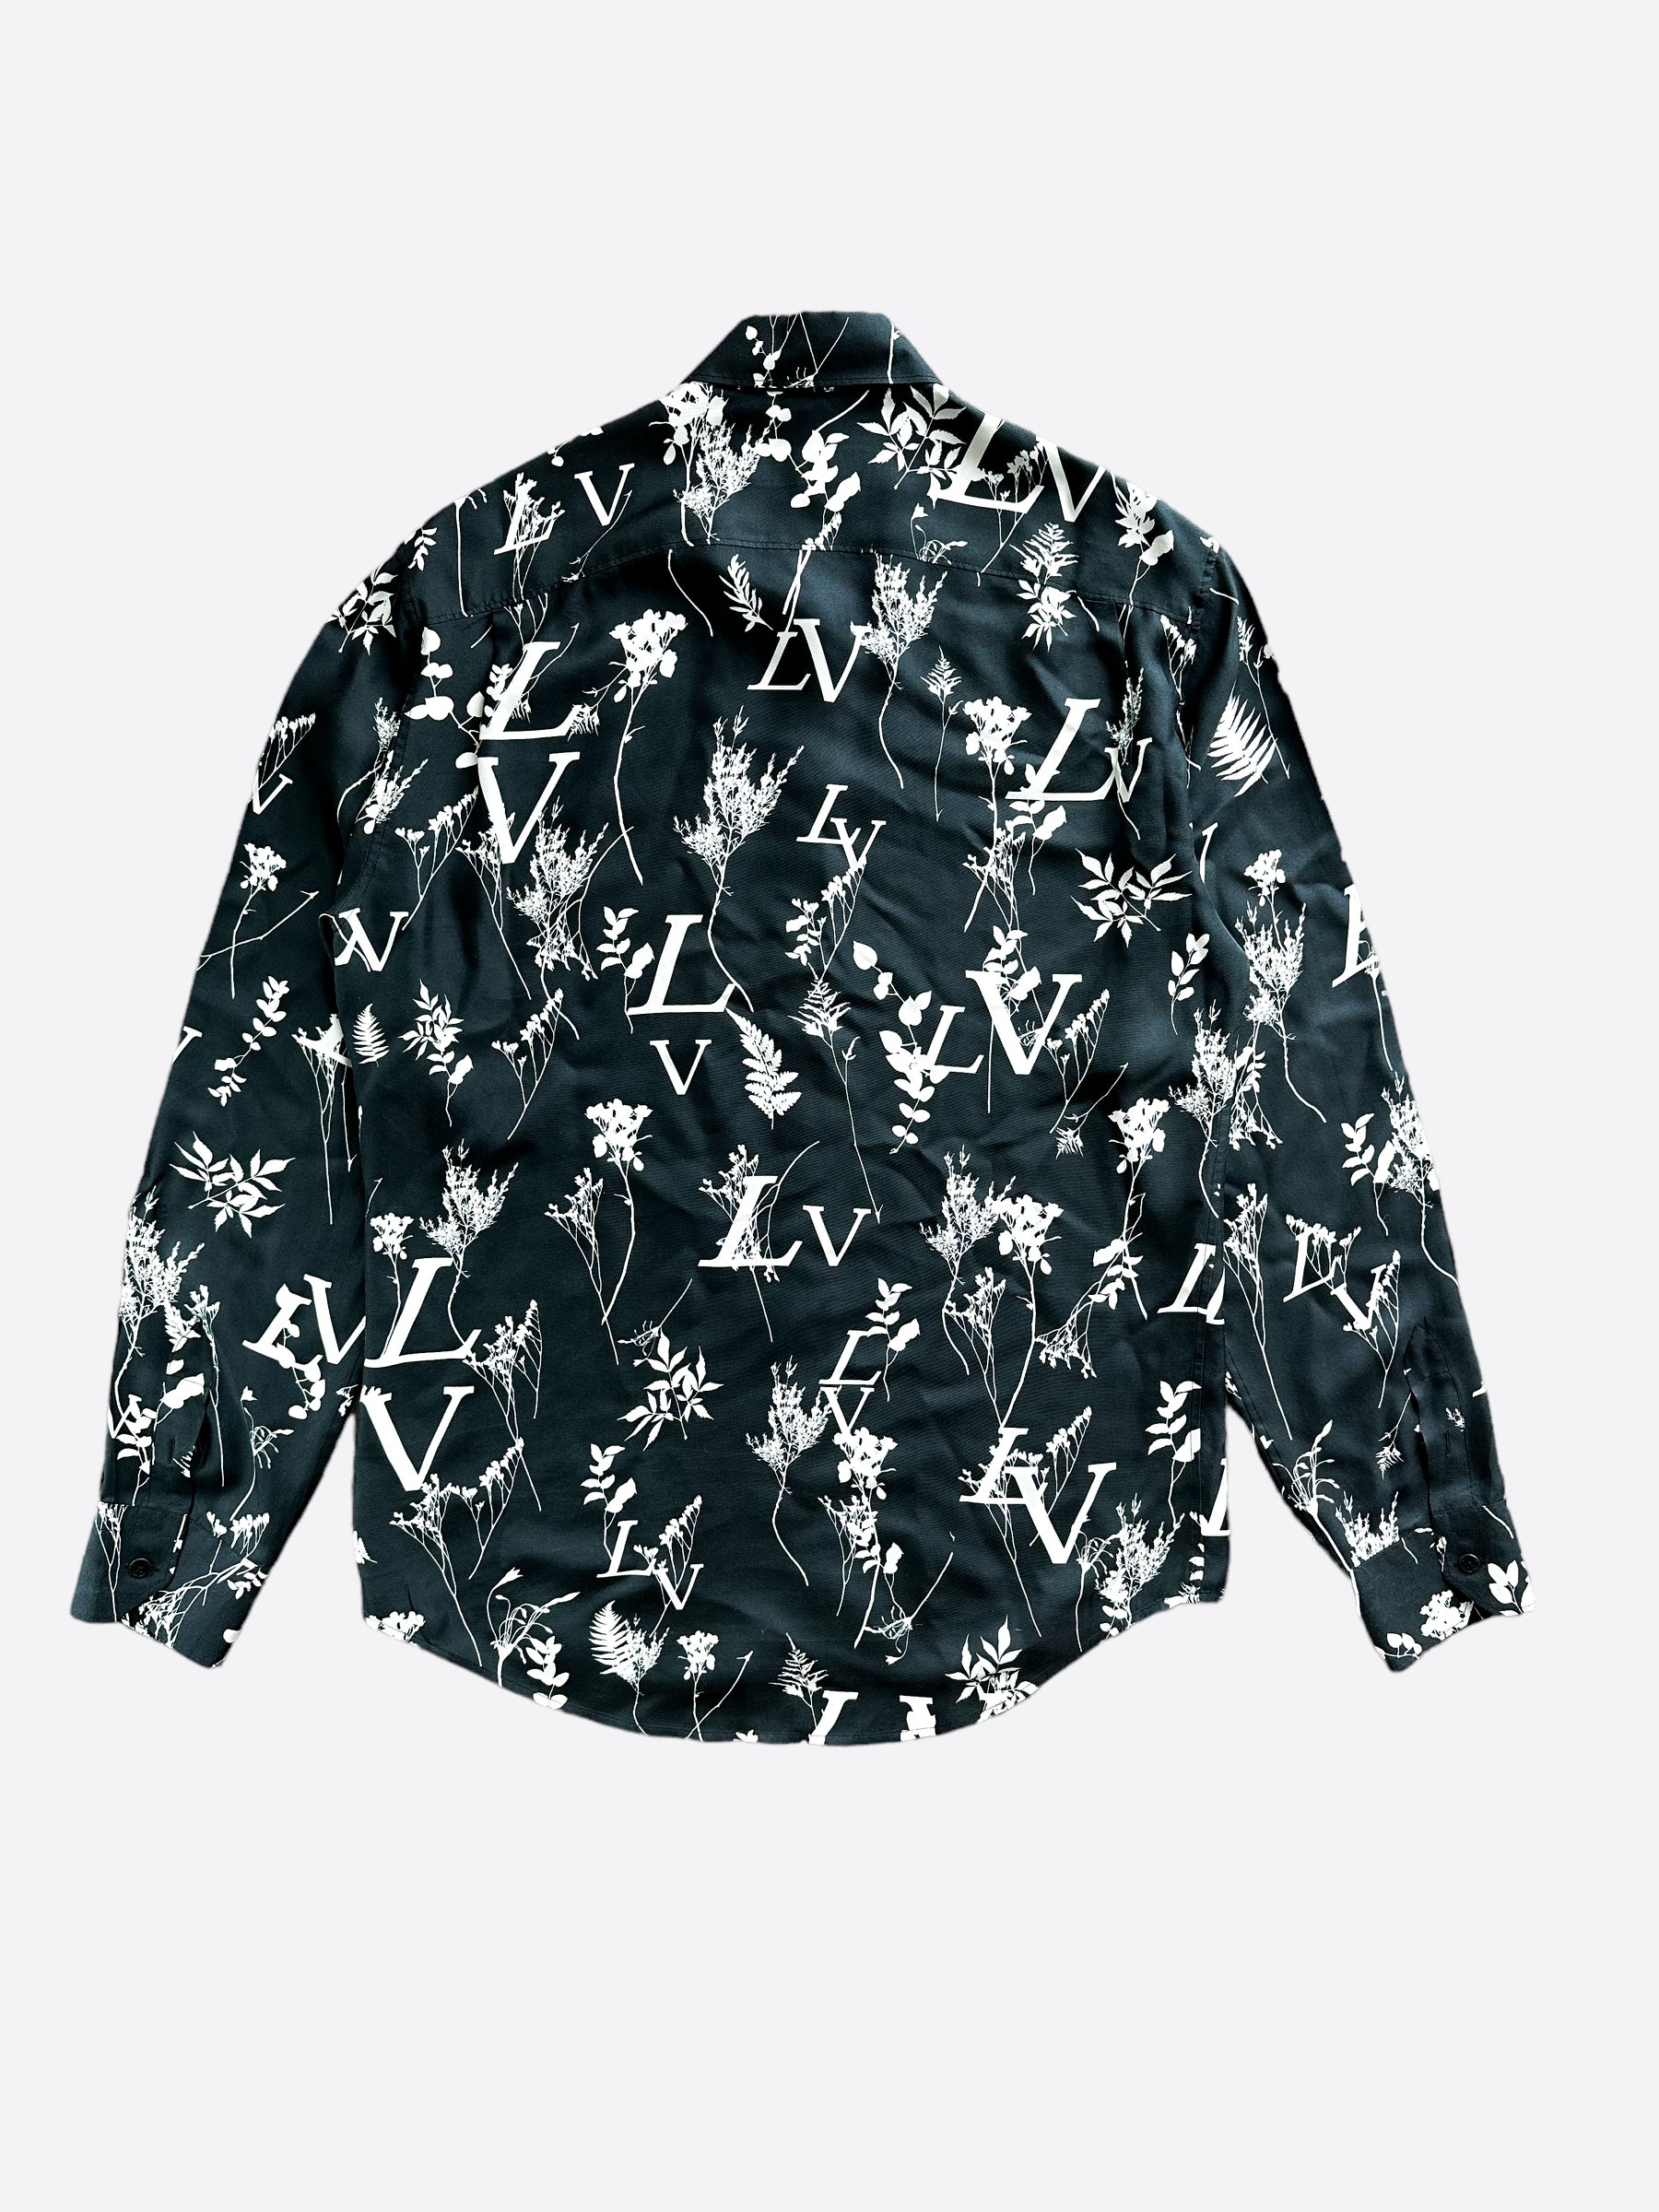 Louis Vuitton Dice Silk Shirt Pattern